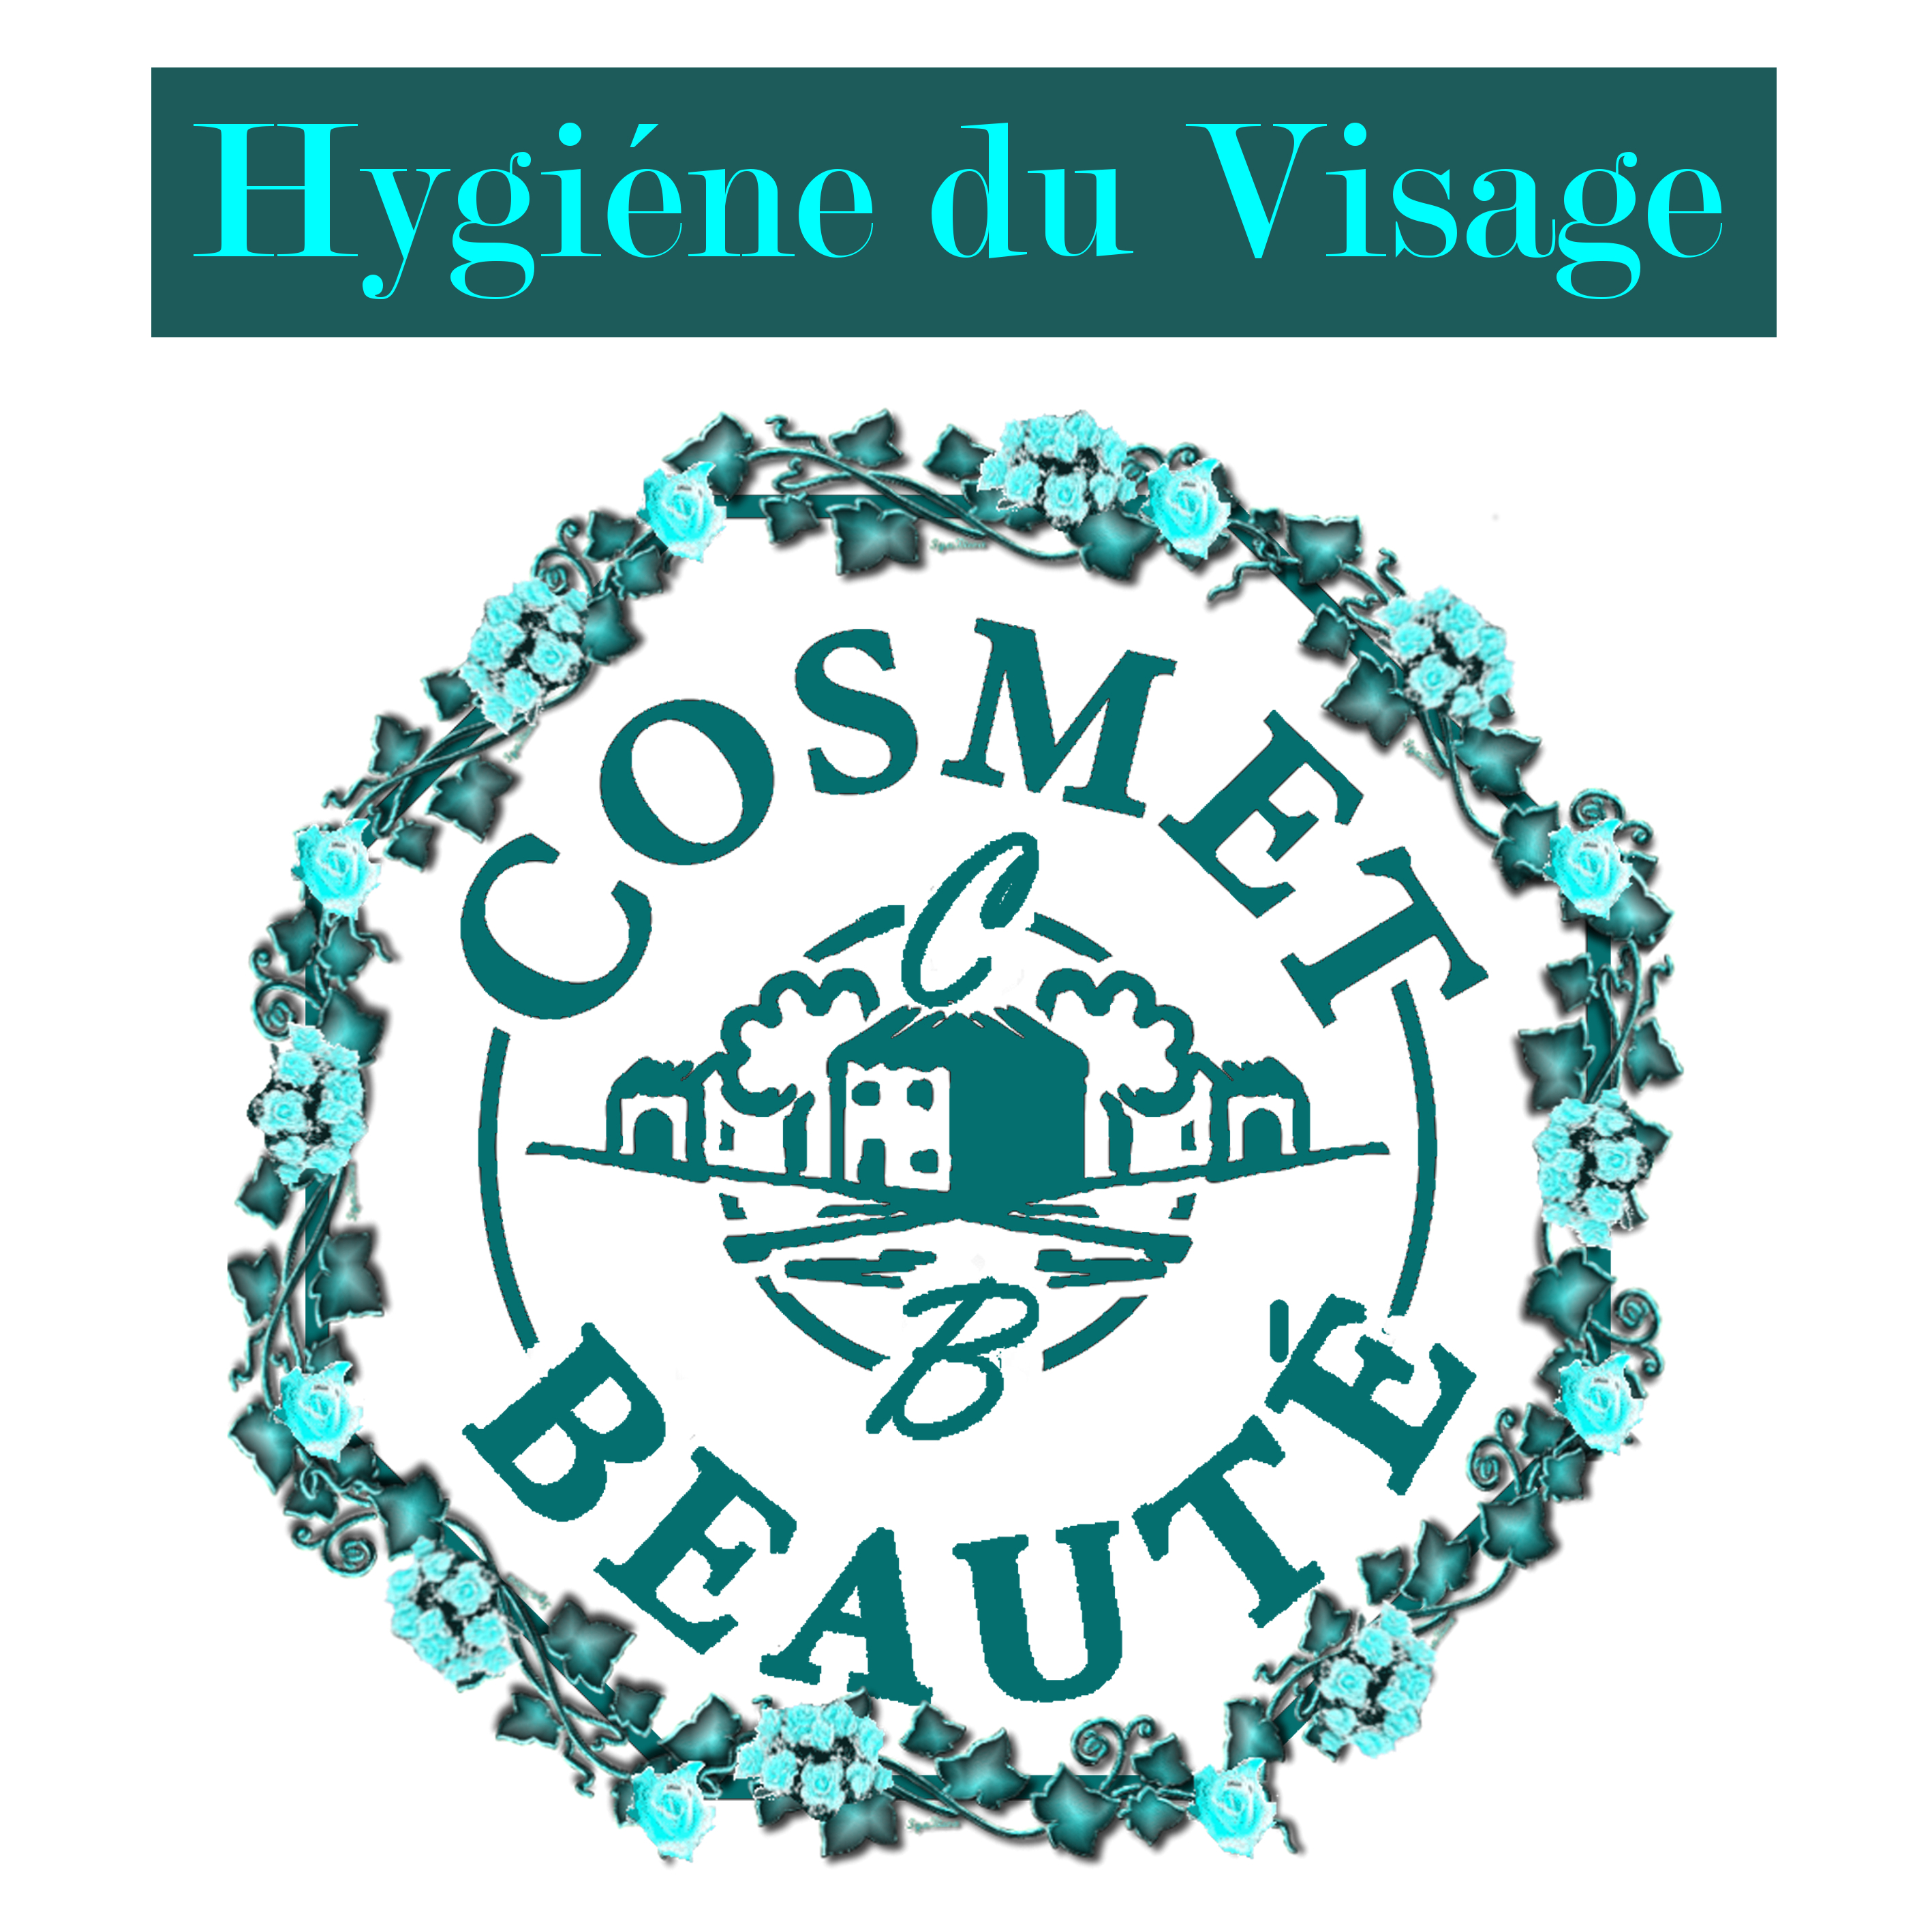 hygiene-du-visage-99-origine-naturelle-bio-cosmet-beaute-cosmet-savon-logo